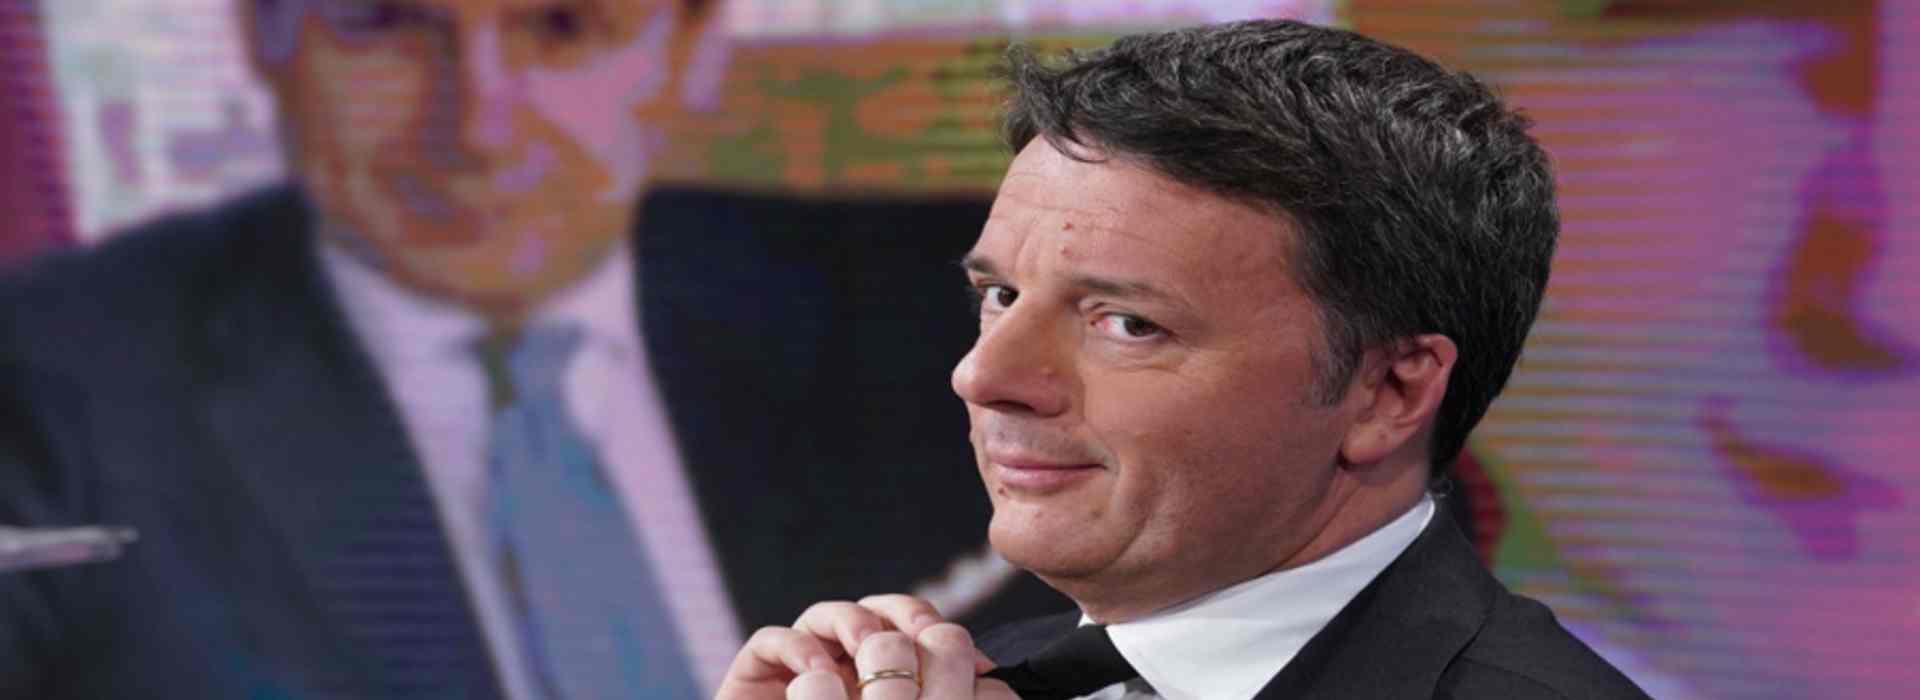 Salta l'incontro tra Conte e Renzi. Ministri pronti a lasciare